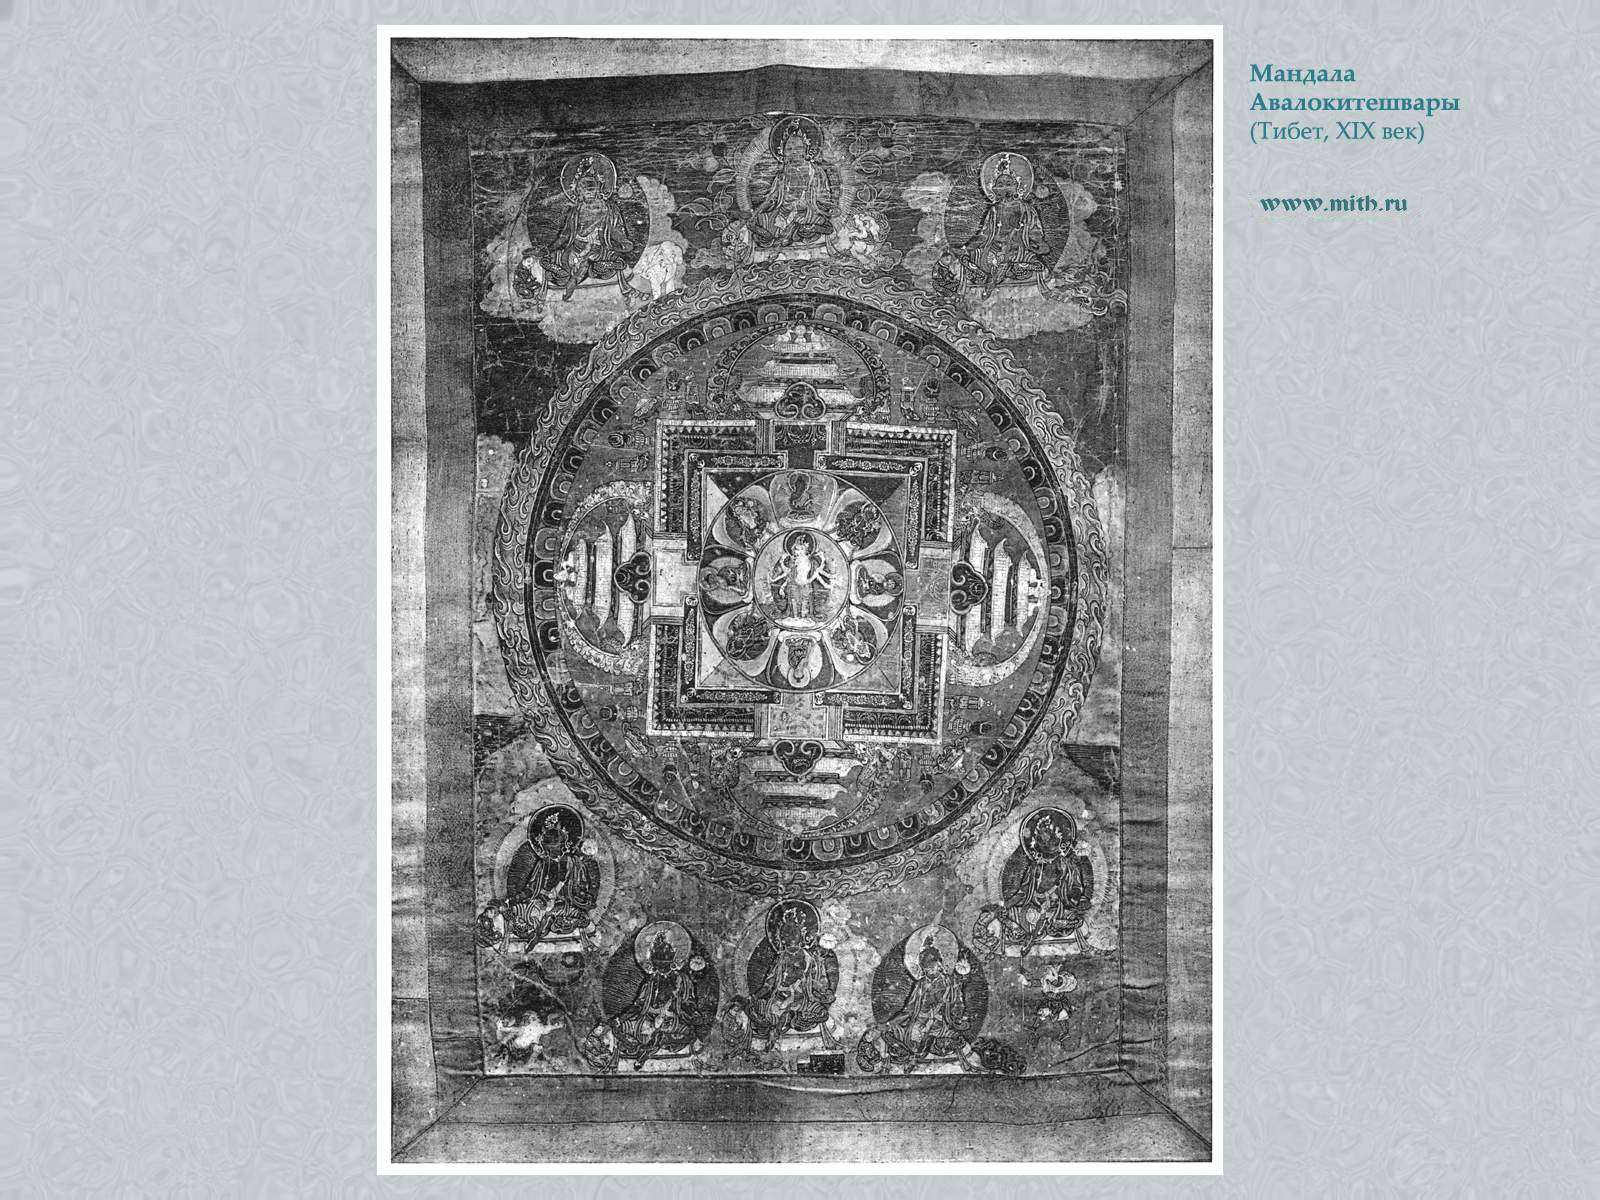 мандала Авалокитешвары

перейти к книге 'Тибетская живопись'